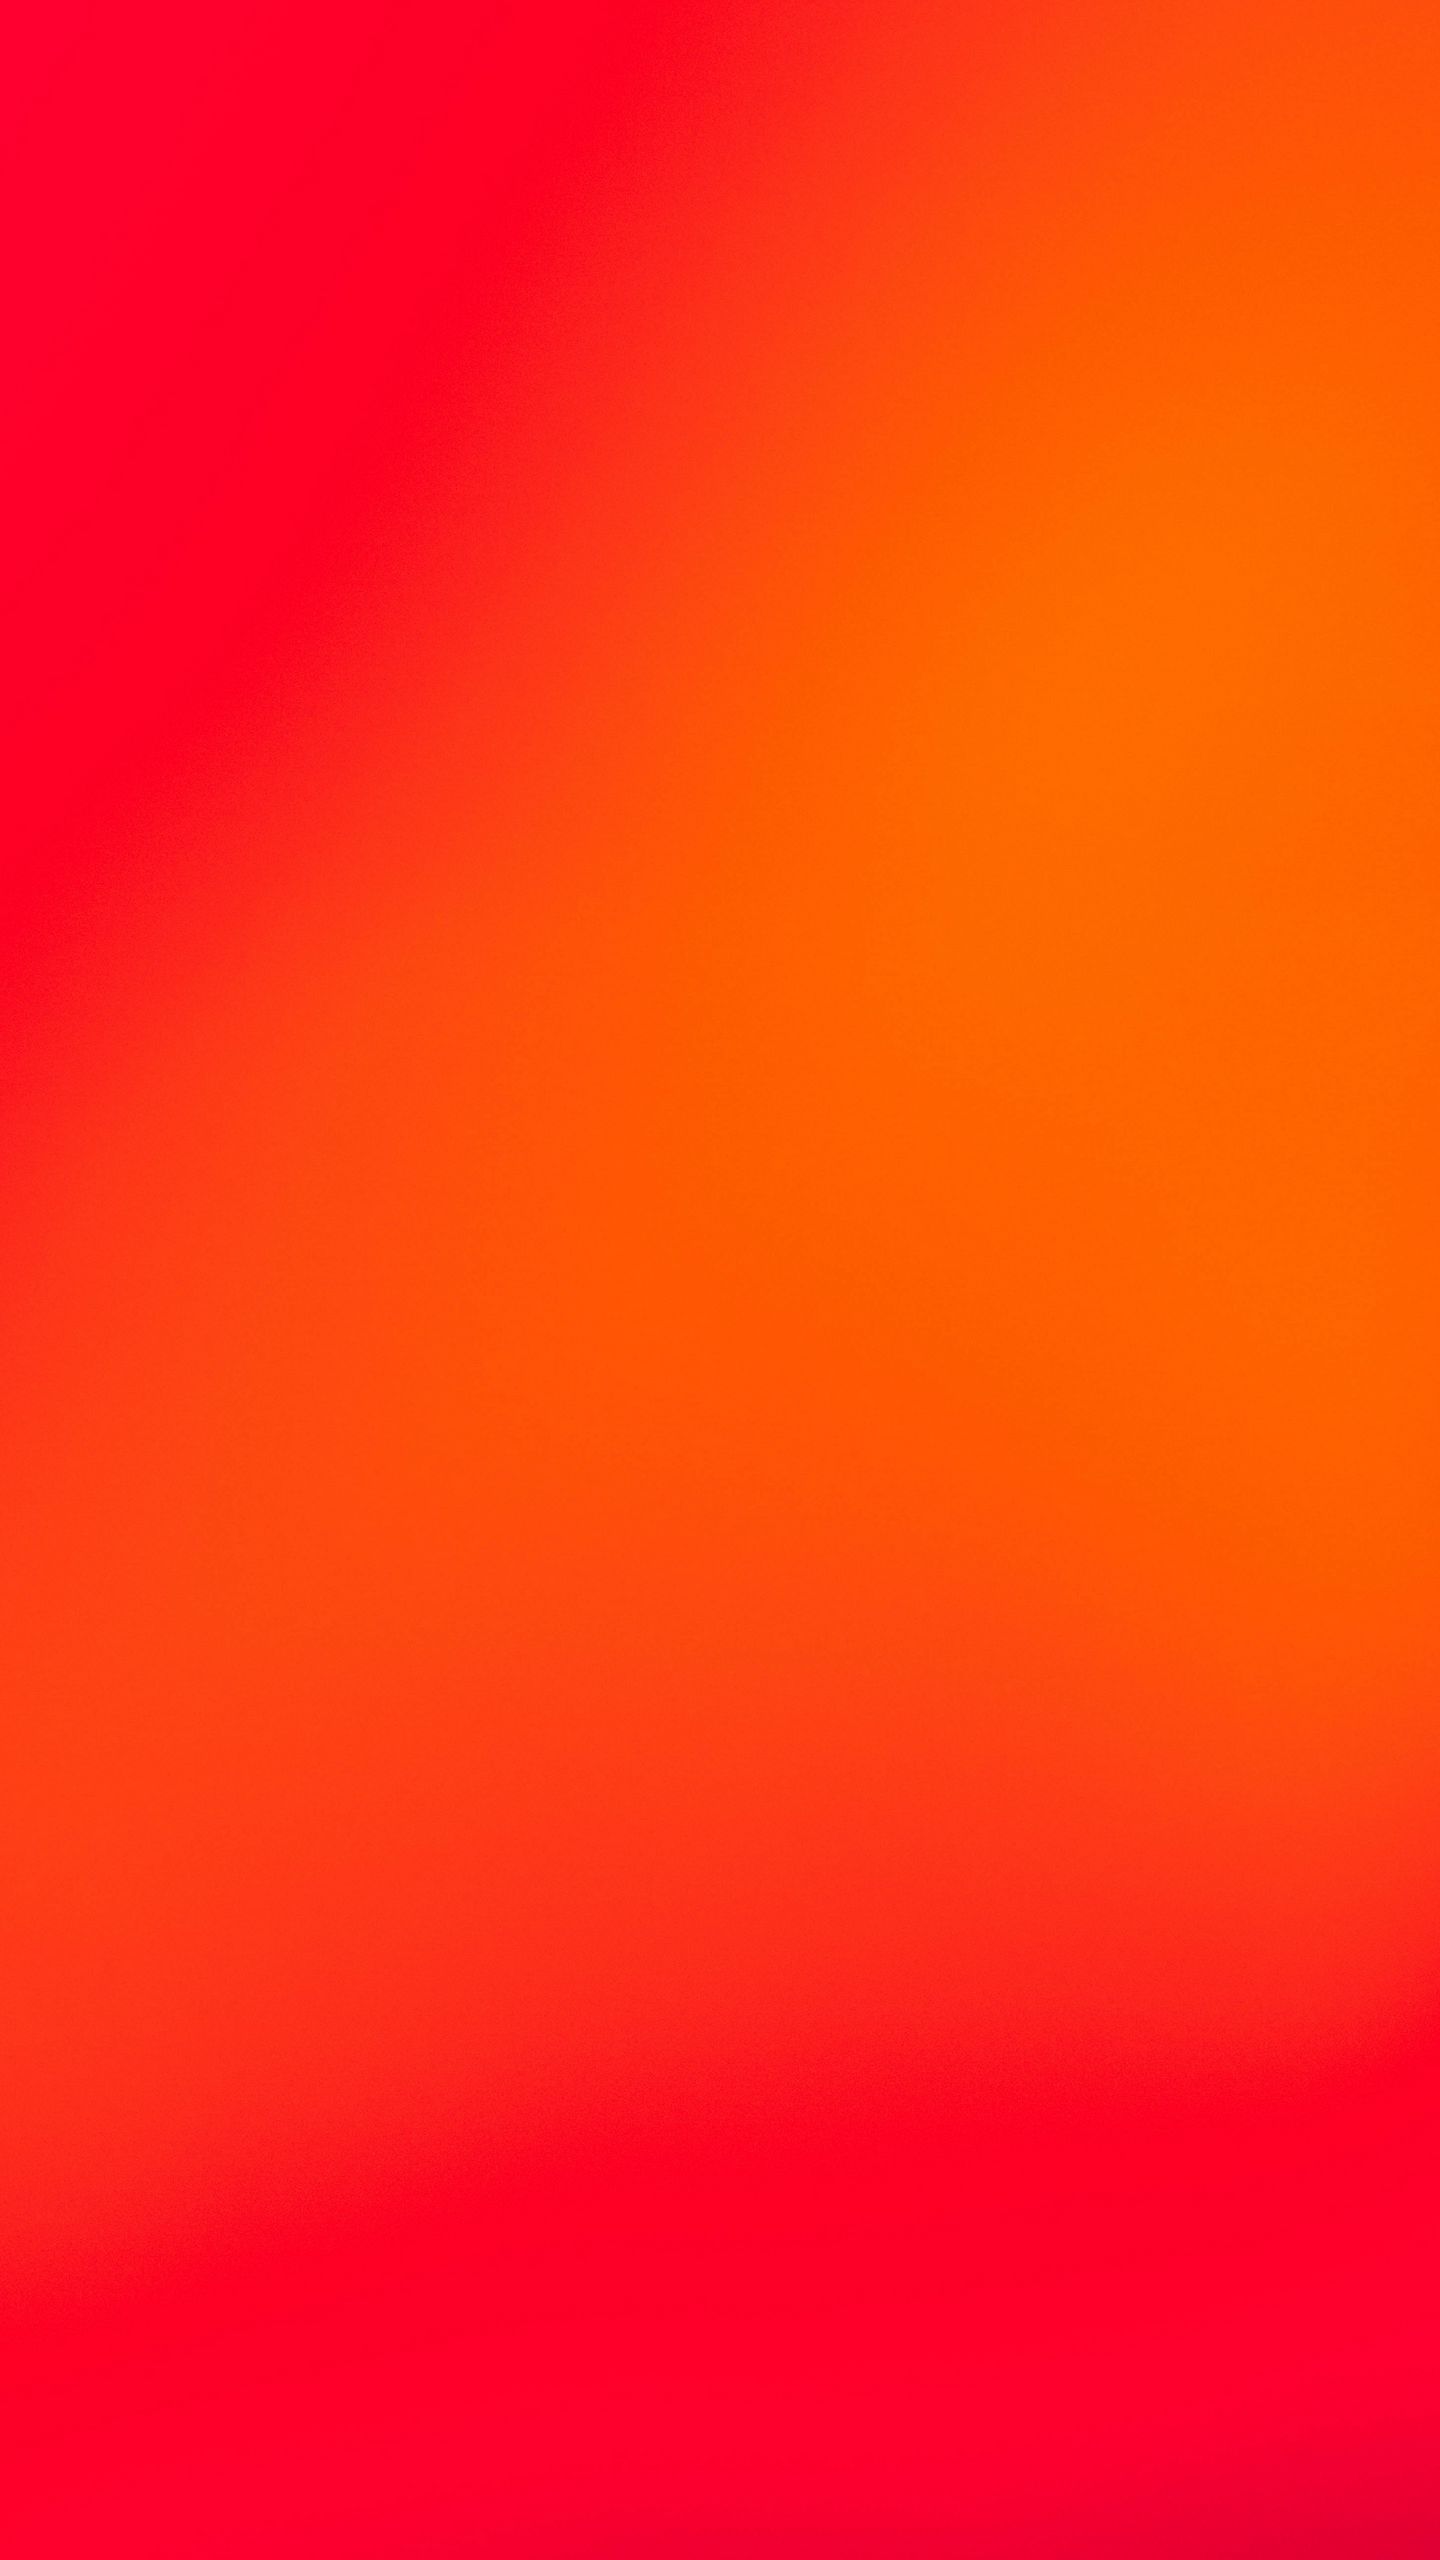 Hình nền đỏ cam gradient là một sự kết hợp hoàn hảo giữa màu đỏ và màu cam, tạo nên một hiệu ứng rực rỡ khó có thể chối từ. Xem và cảm nhận những hình nền đỏ cam gradient để trang trí màn hình của bạn một cách thật sáng tạo!